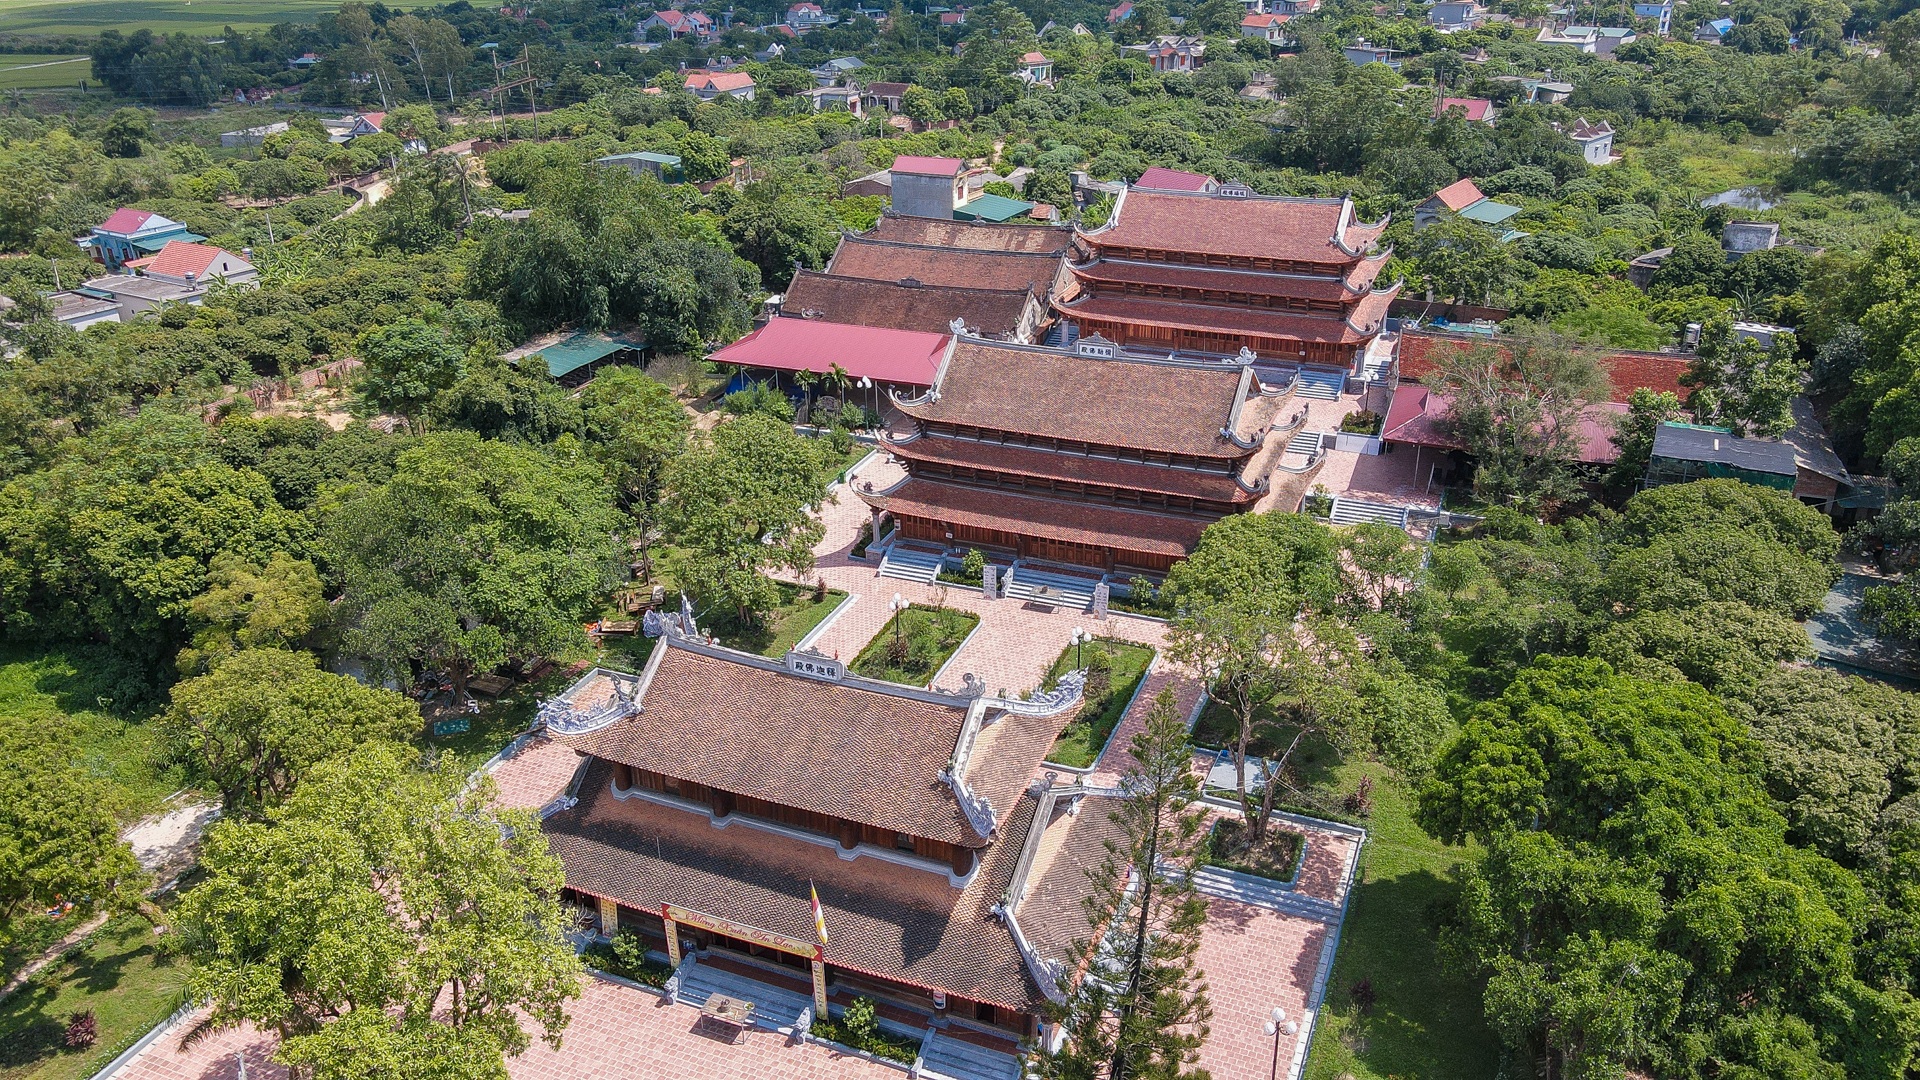 Ngôi chùa nghìn năm tuổi  - Trường Đại học phật giáo đầu tiên ở Việt Nam - 7